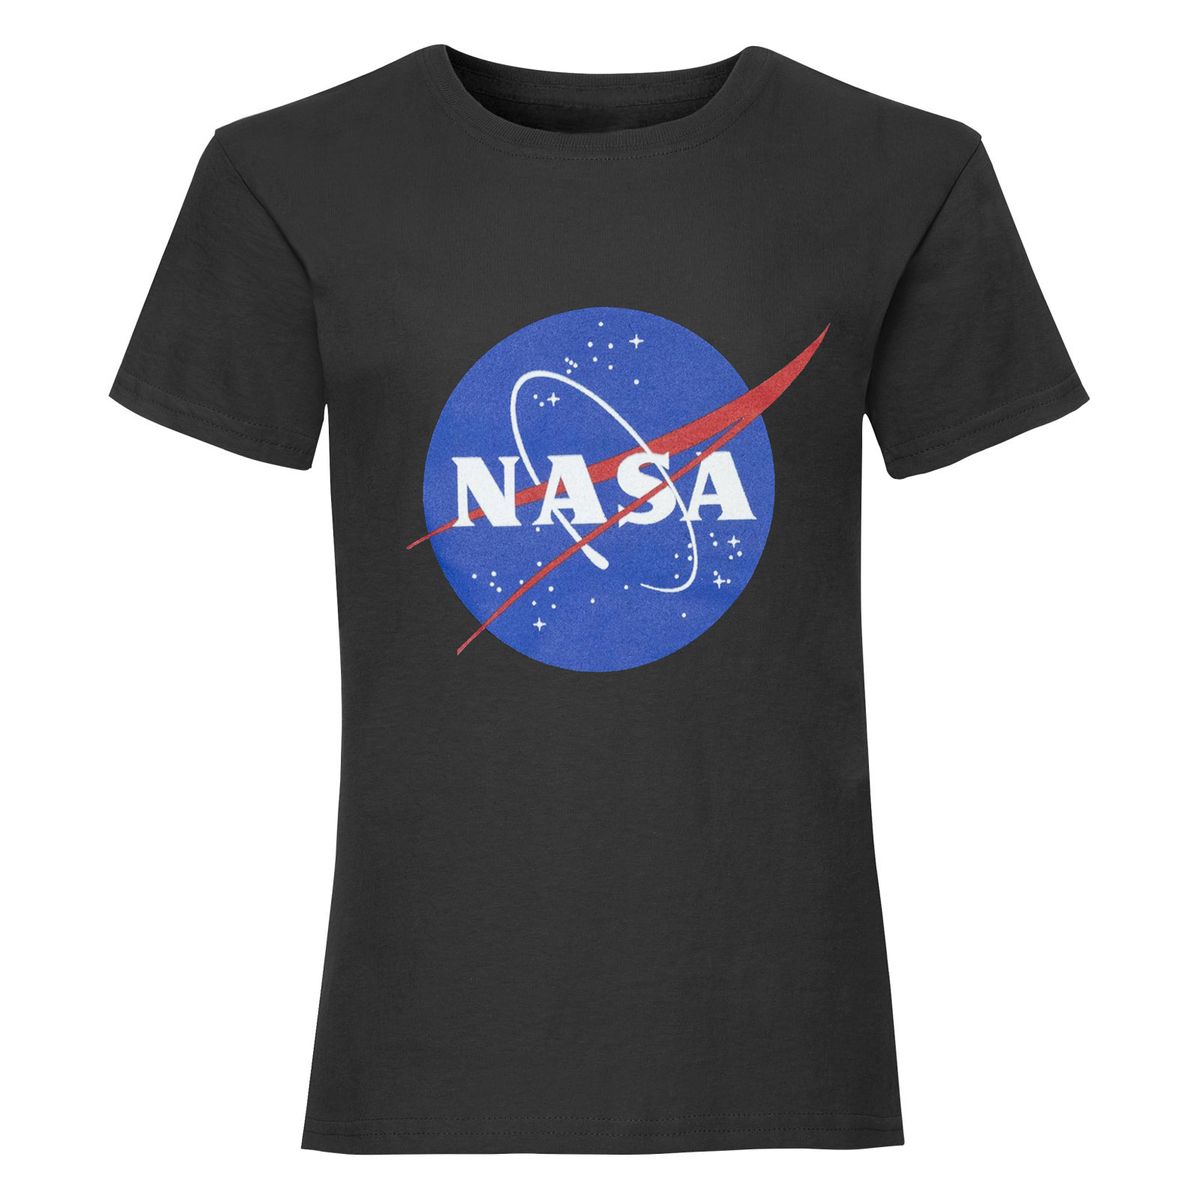 La Redoute Fille Vêtements Tops & T-shirts T-shirts Manches courtes Tshirt à imprimé NASA et manches courtes 